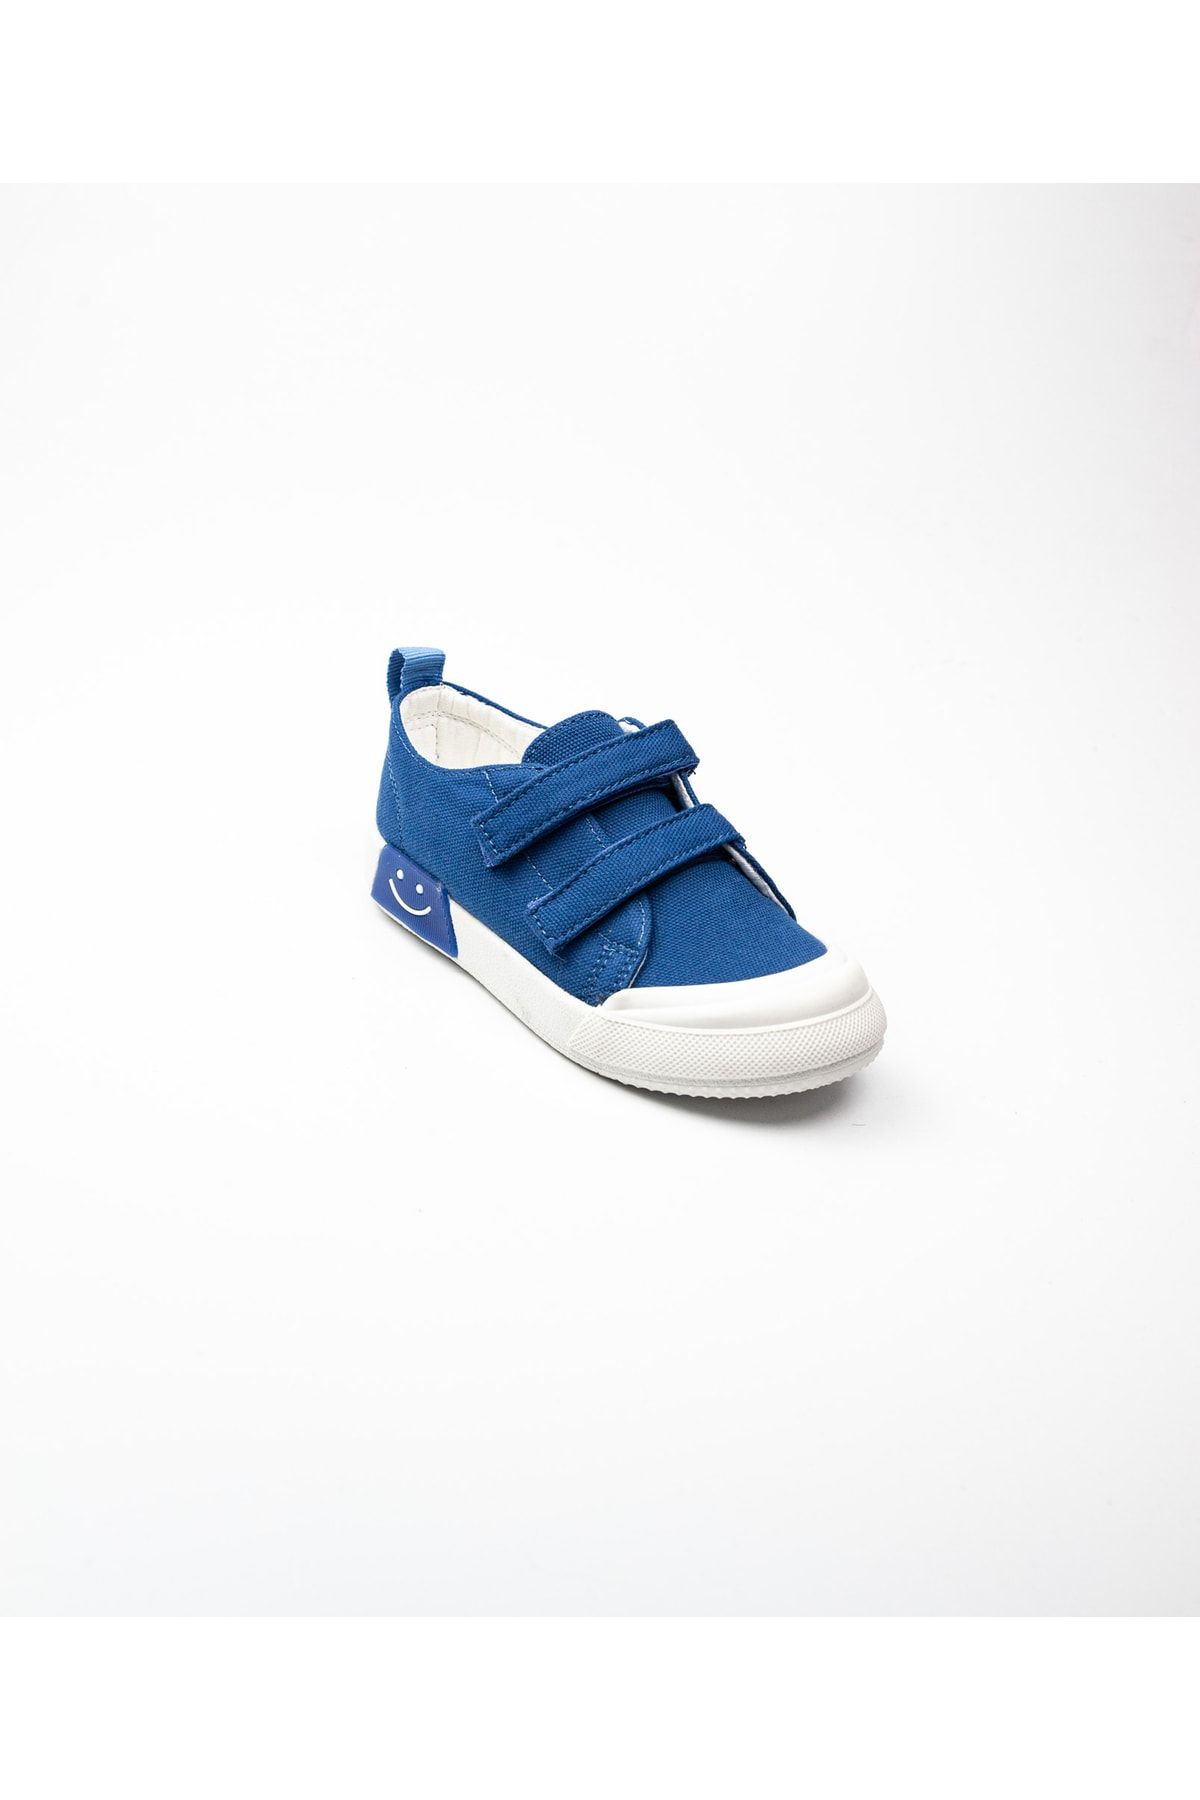 Vicco 925. P22y. 251 Luffy Mavi Işıklı Keten Çocuk Ayakkabı